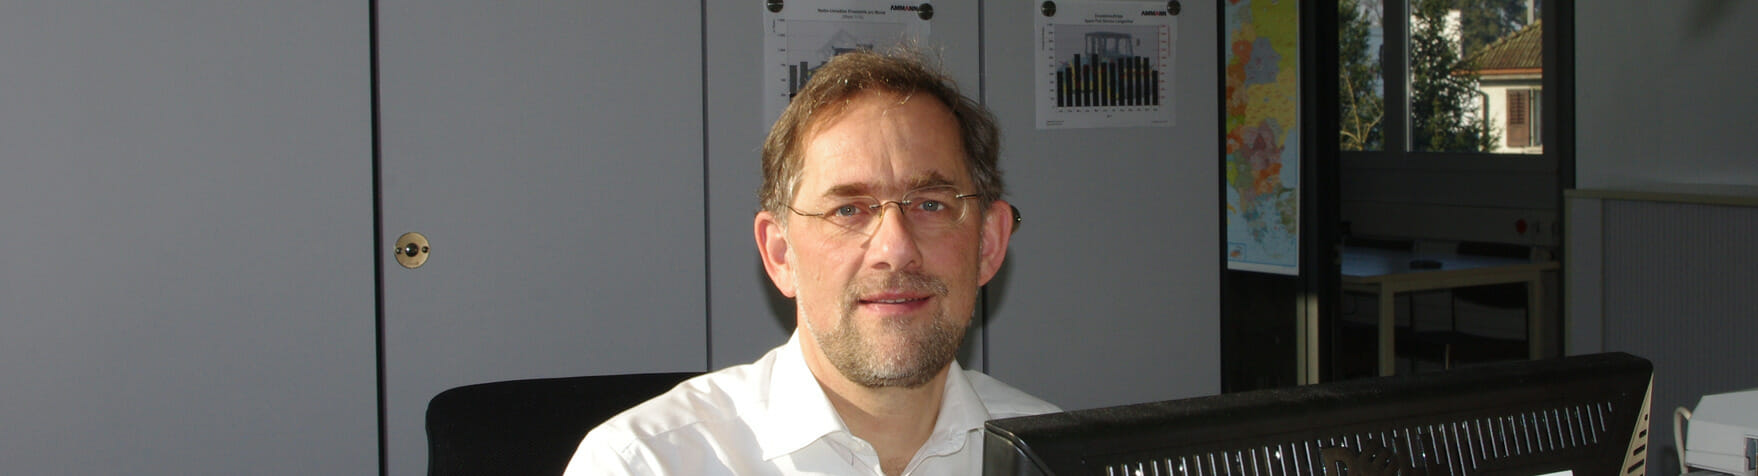 Andreas Noll, der Berater für Ihr Ersatzteilwesen